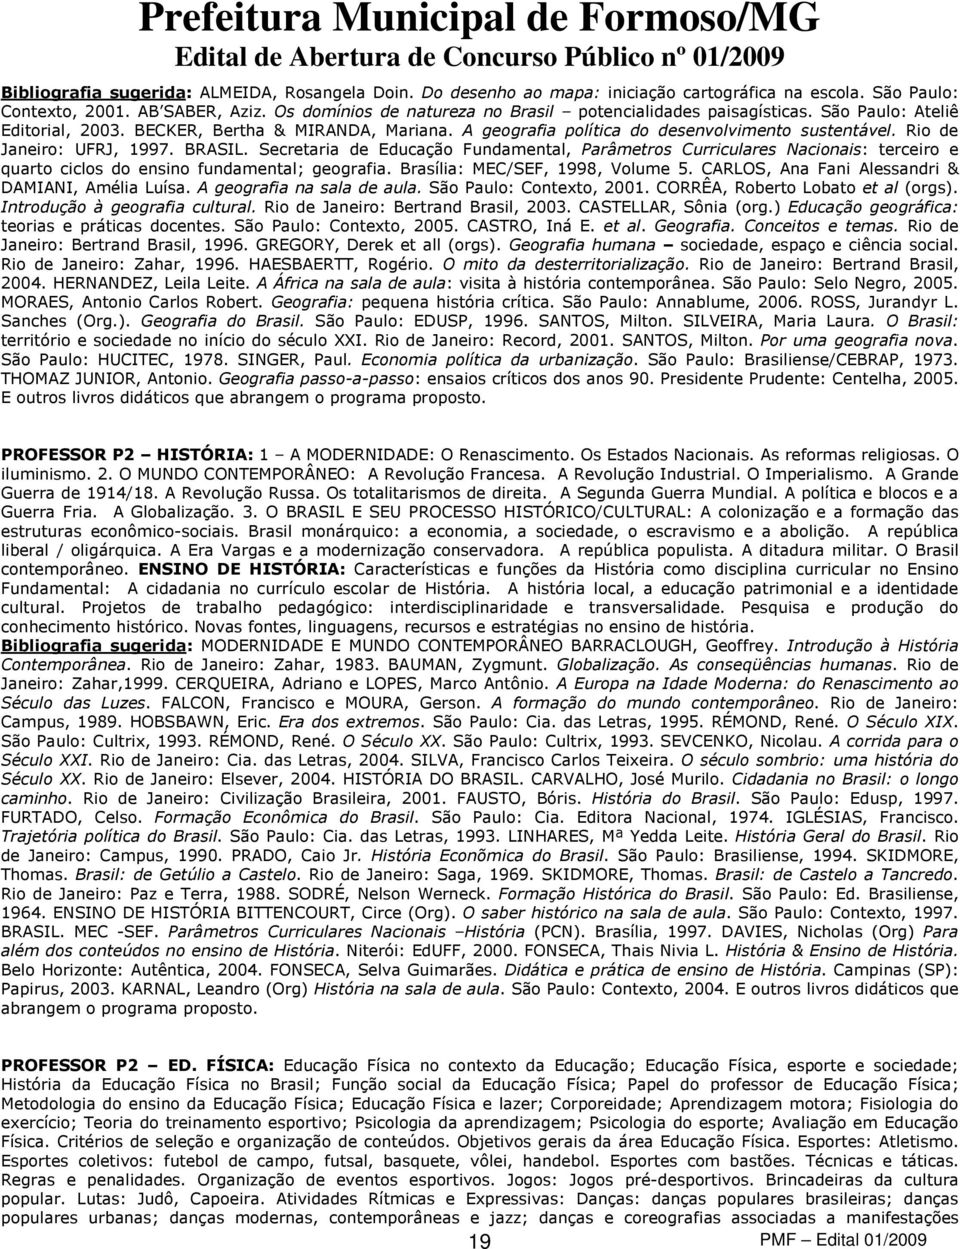 Rio de Janeiro: UFRJ, 1997. BRASIL. Secretaria de Educação Fundamental, Parâmetros Curriculares Nacionais: terceiro e quarto ciclos do ensino fundamental; geografia. Brasília: MEC/SEF, 1998, Volume 5.